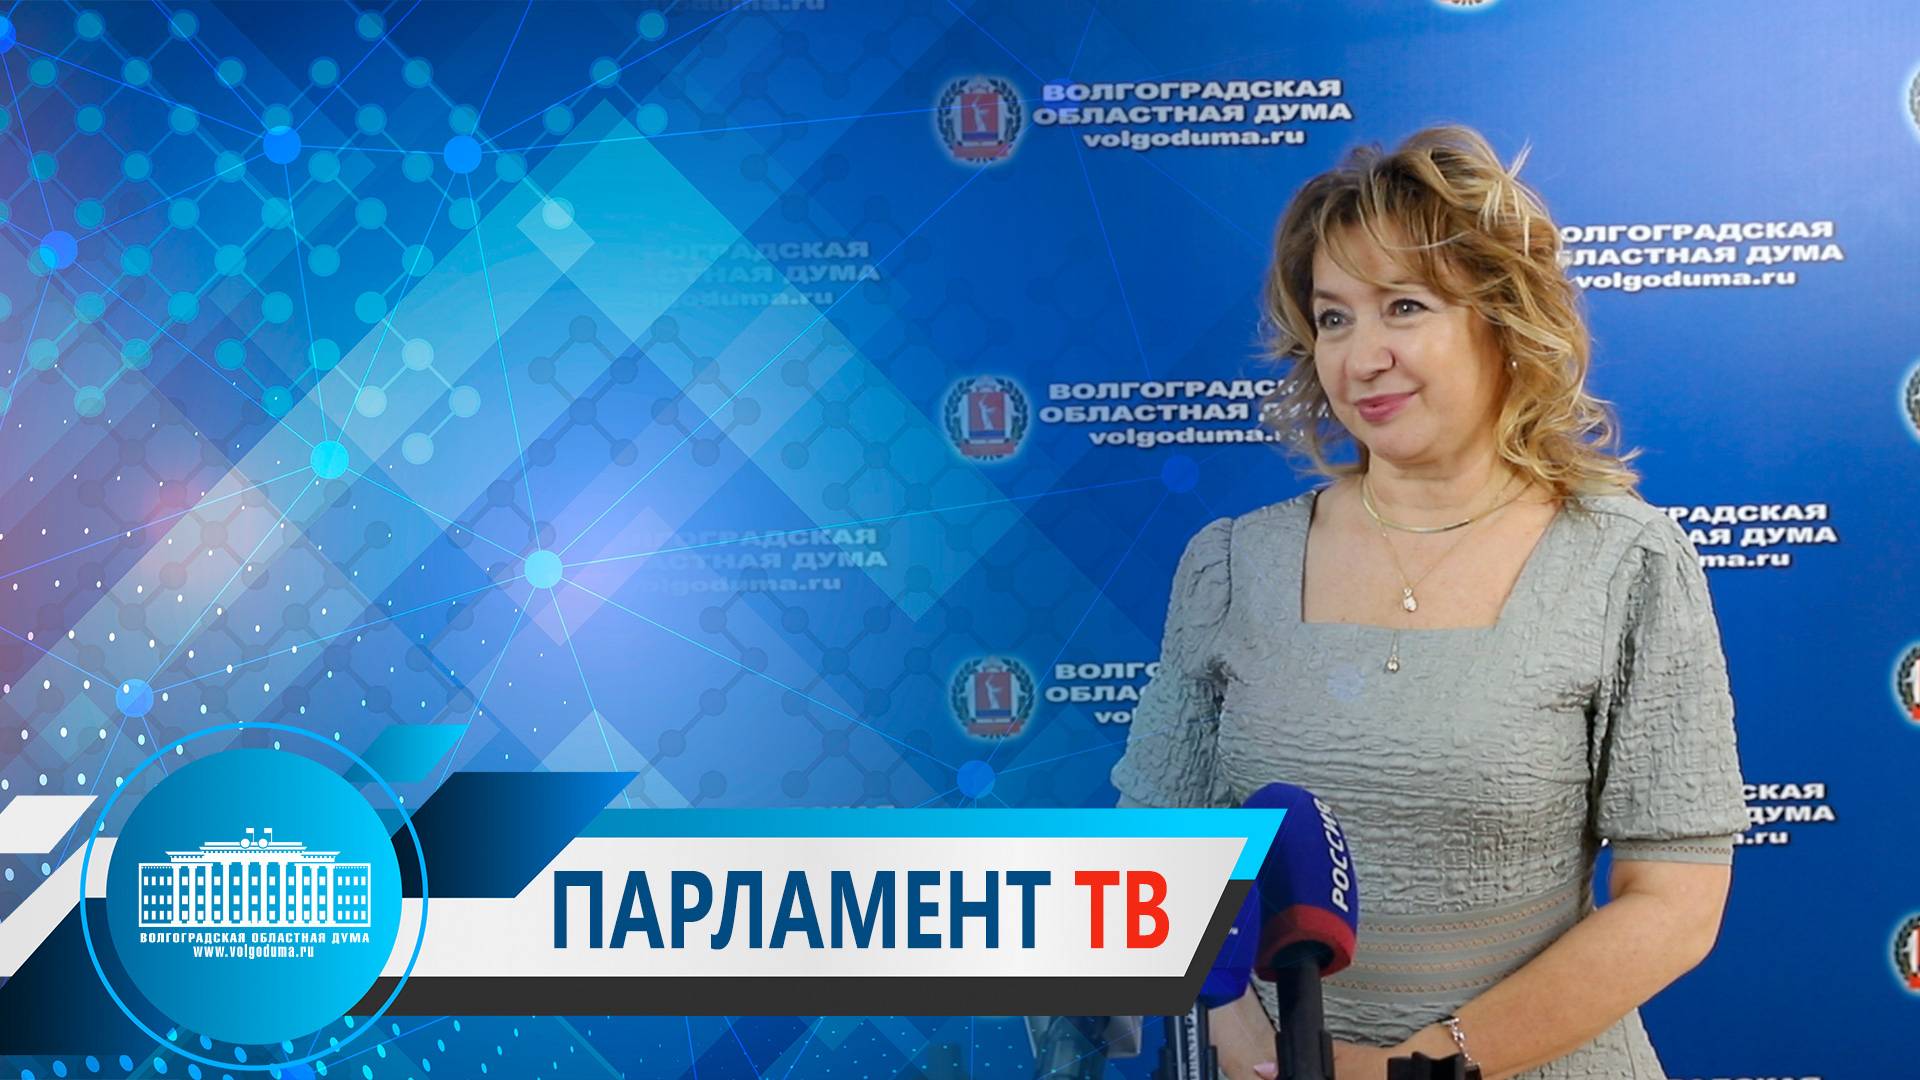 Татьяна Бухтина: "В новый состав Общественной палаты вошли опытные и уважаемые люди"